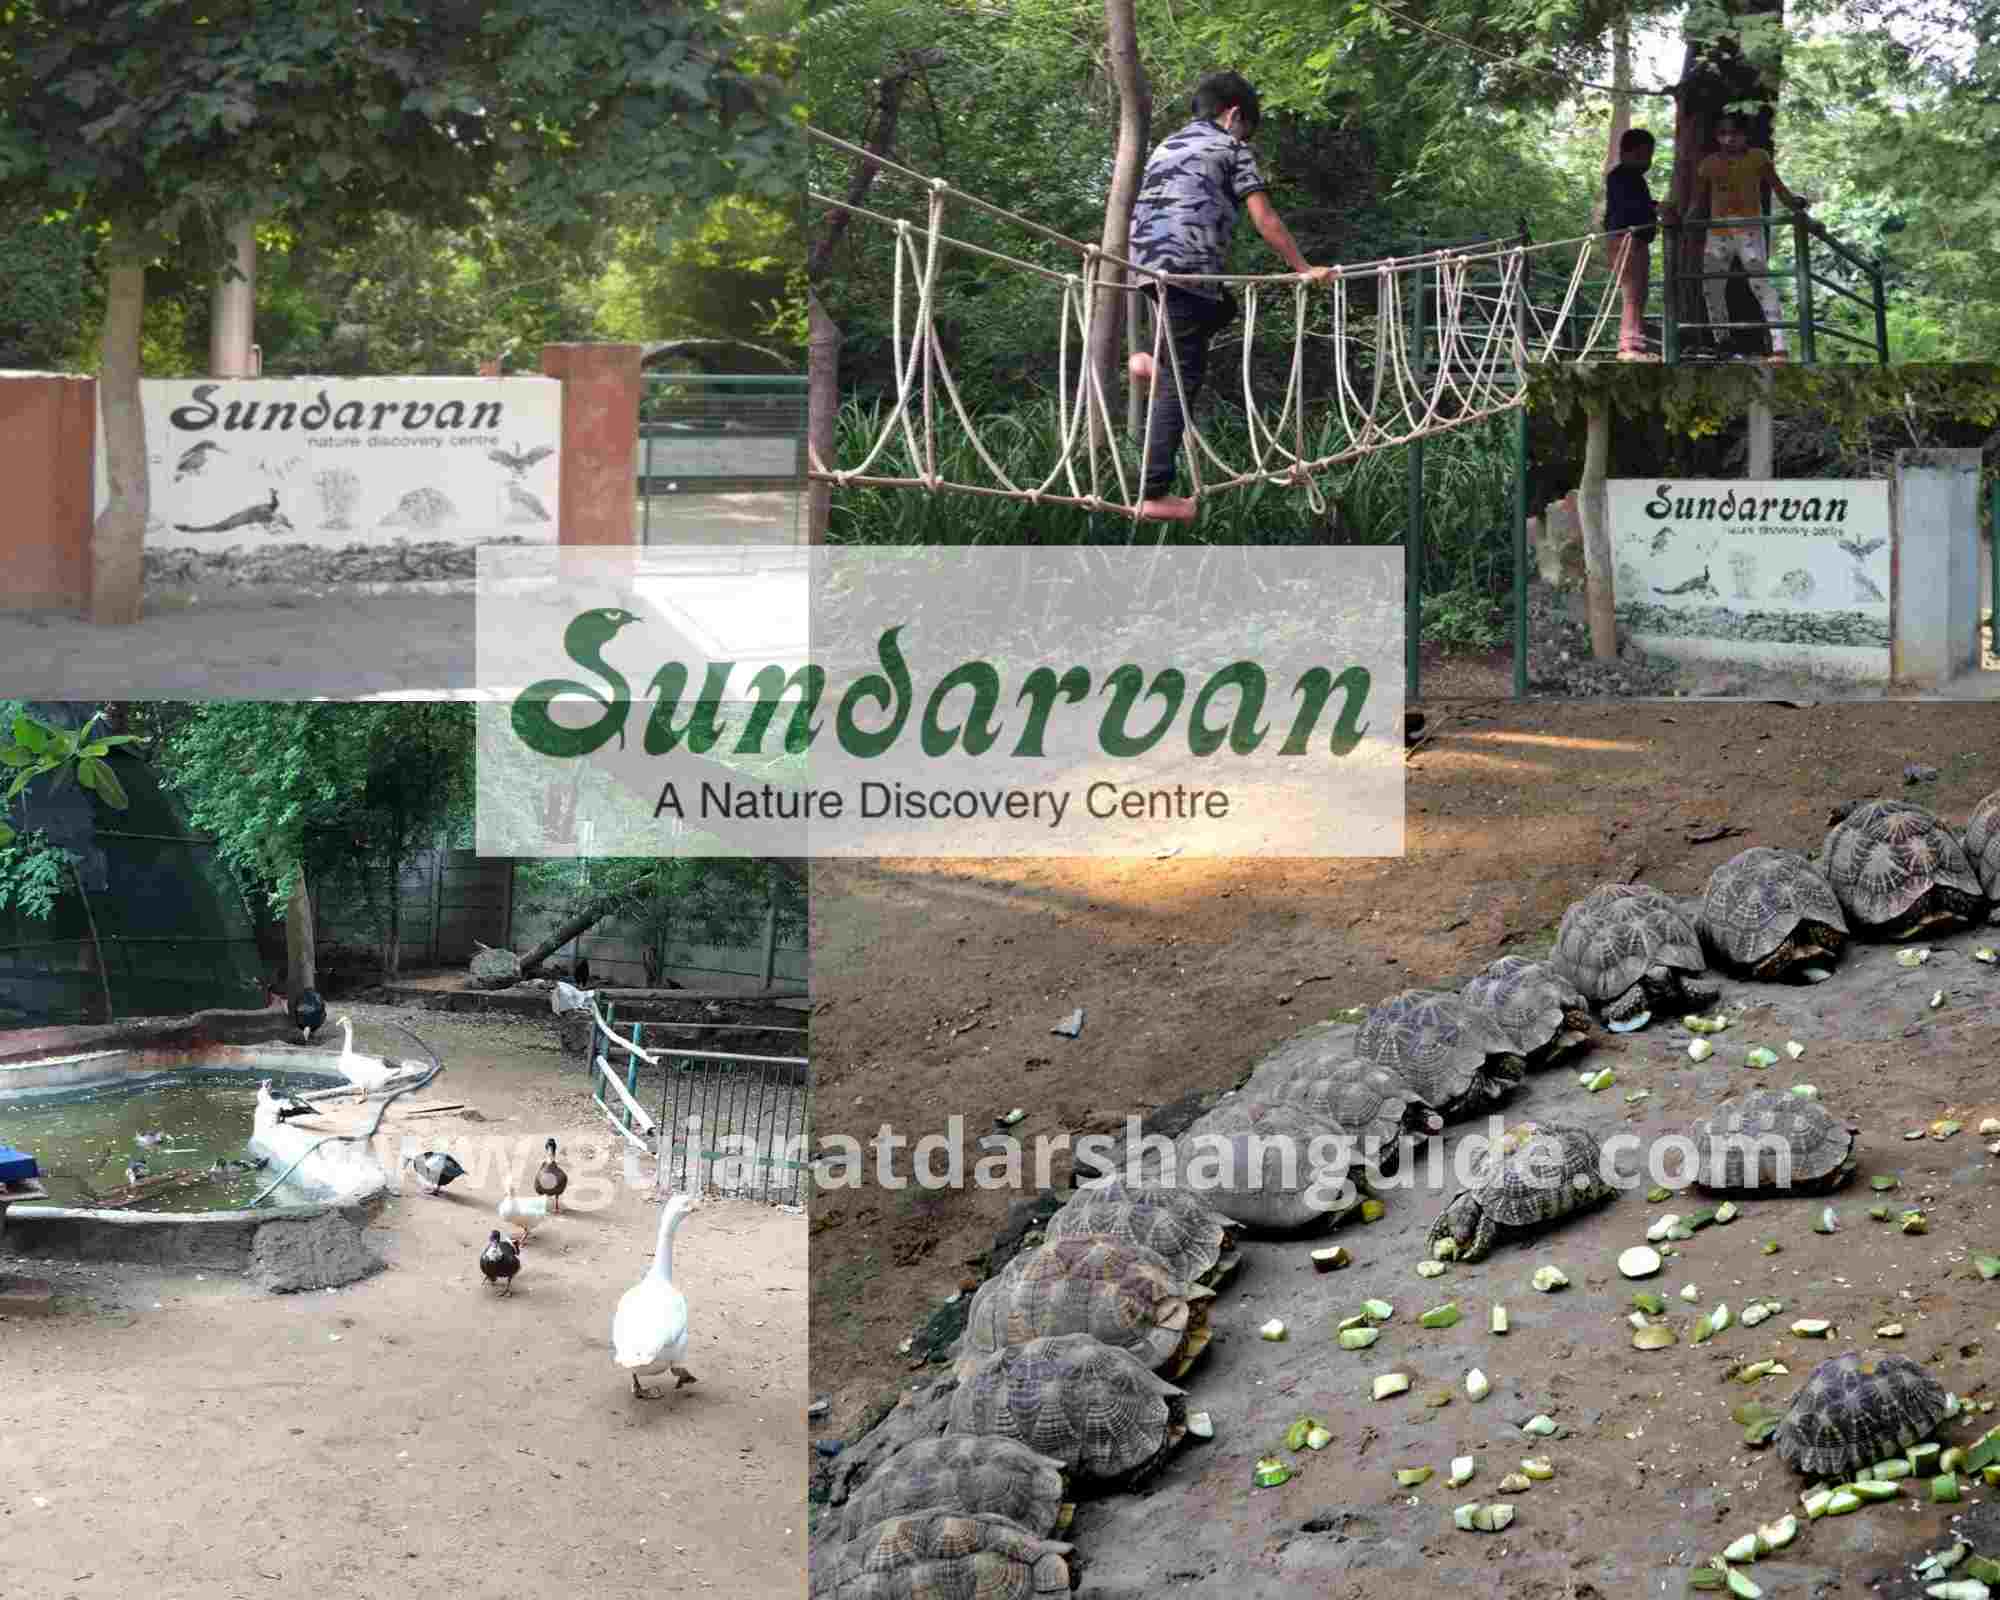 Sundarvan